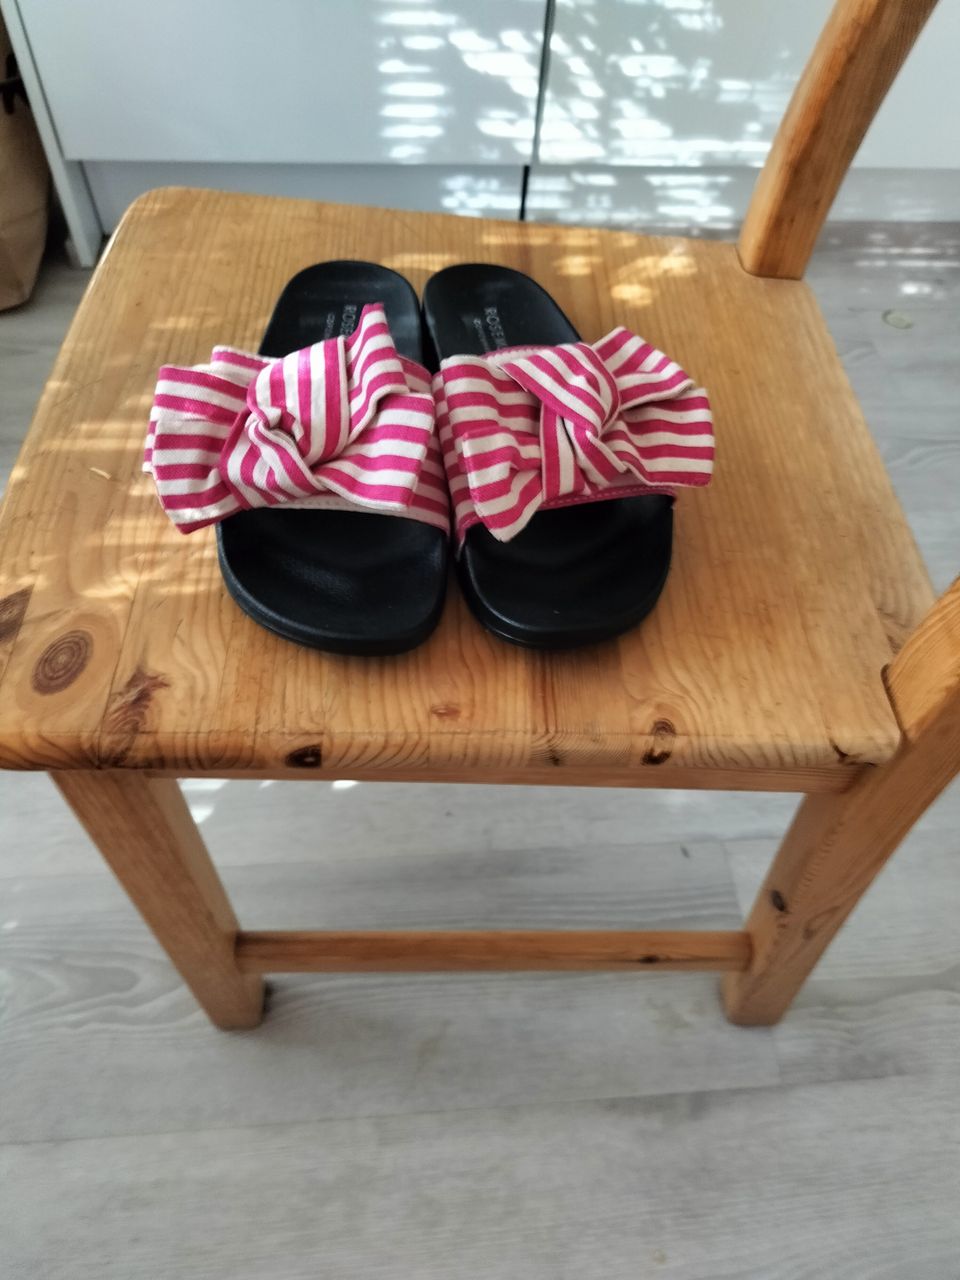 Uudet Rosemunde rusetti sandaalit,koko 40